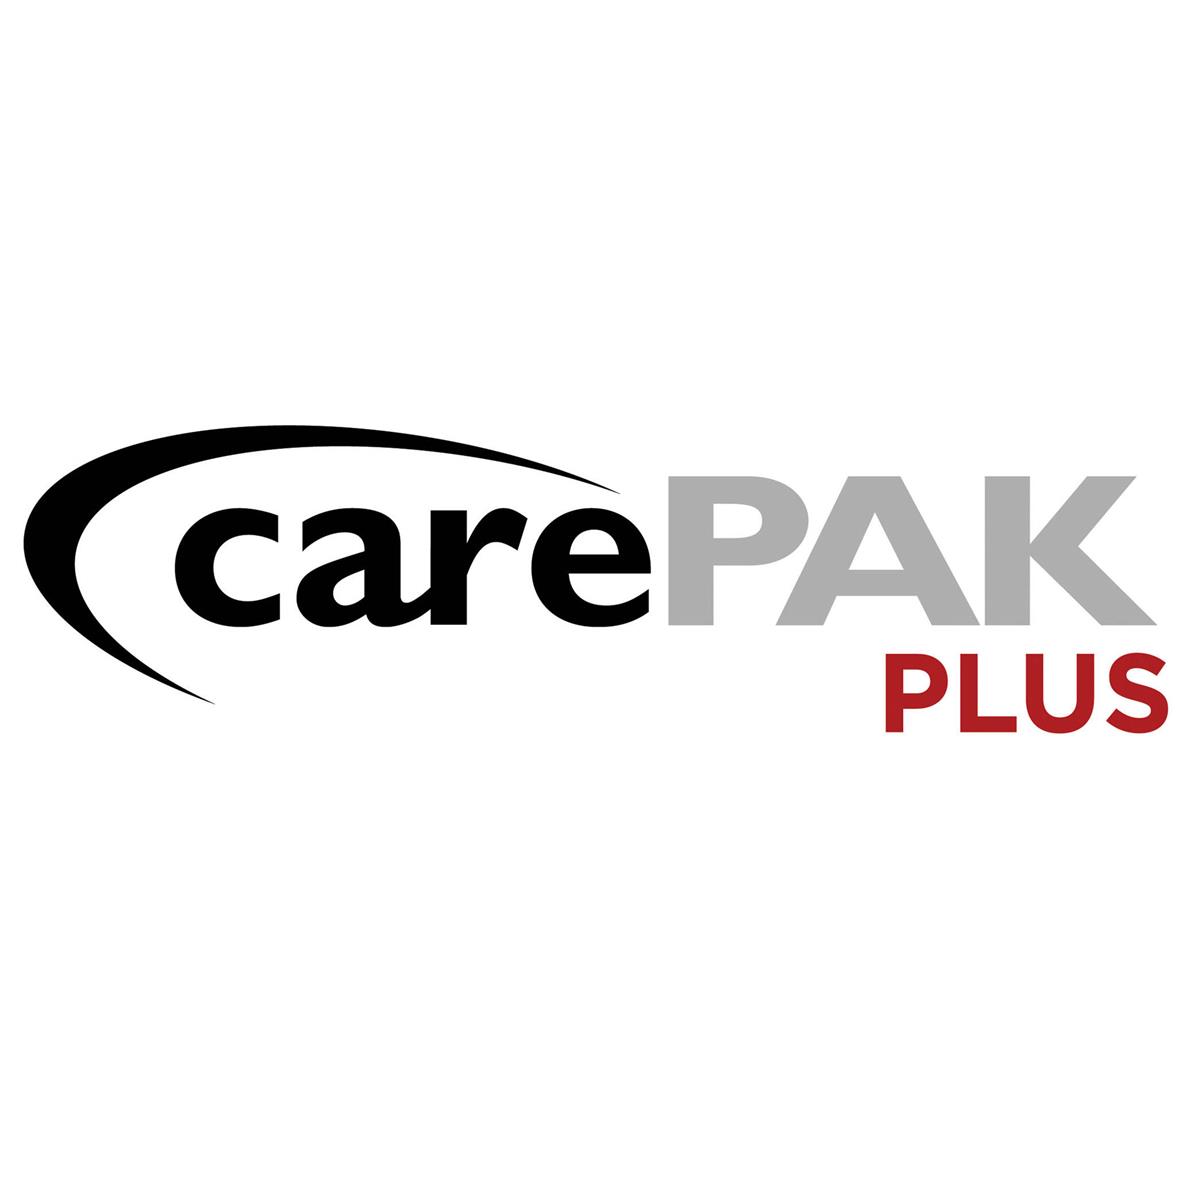 Canon CarePAK PLUS 3 Year Plan for EOS DSLR & Mirrorless Cameras (Up to $1500) -  9620B018AA